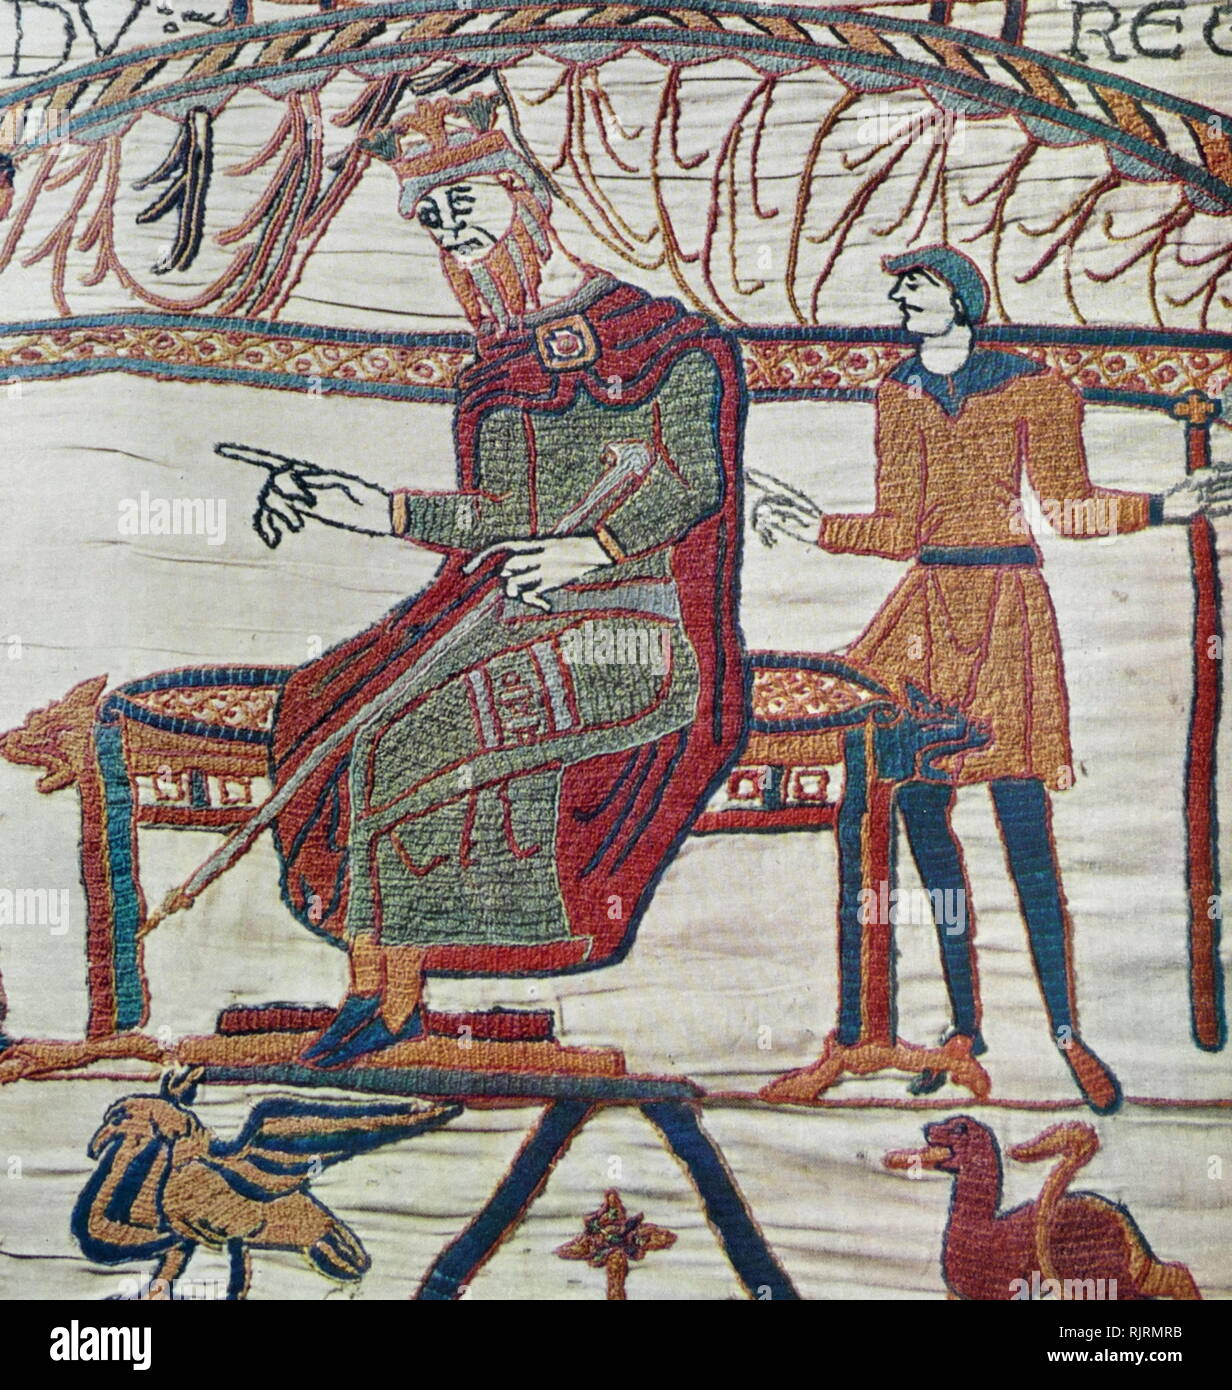 Episodio dall'Arazzo di Bayeux, un panno ricamato quasi 70 metri (230 ft) di lunghezza, che descrive gli eventi che portano fino alla conquista normanna dell'Inghilterra, culminato nella battaglia di Hastings, nel 1066. Si è pensato di data al secolo XI, entro pochi anni dopo la battaglia. Si racconta la storia dal punto di vista della conquista dei Normanni. Foto Stock